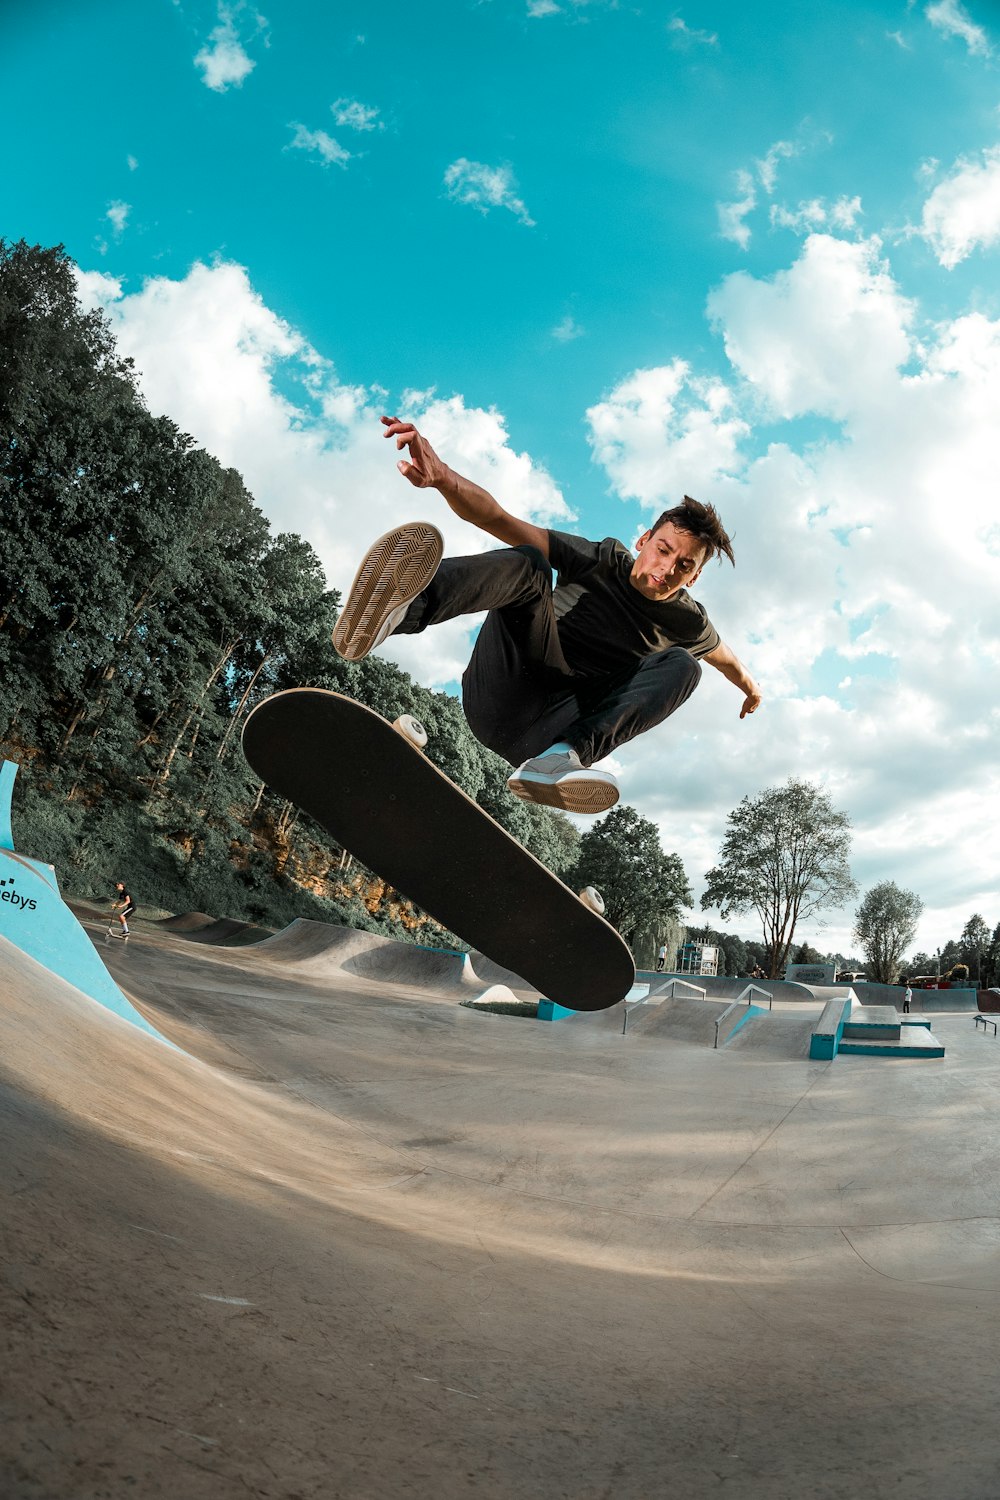 man making trick on skateboard